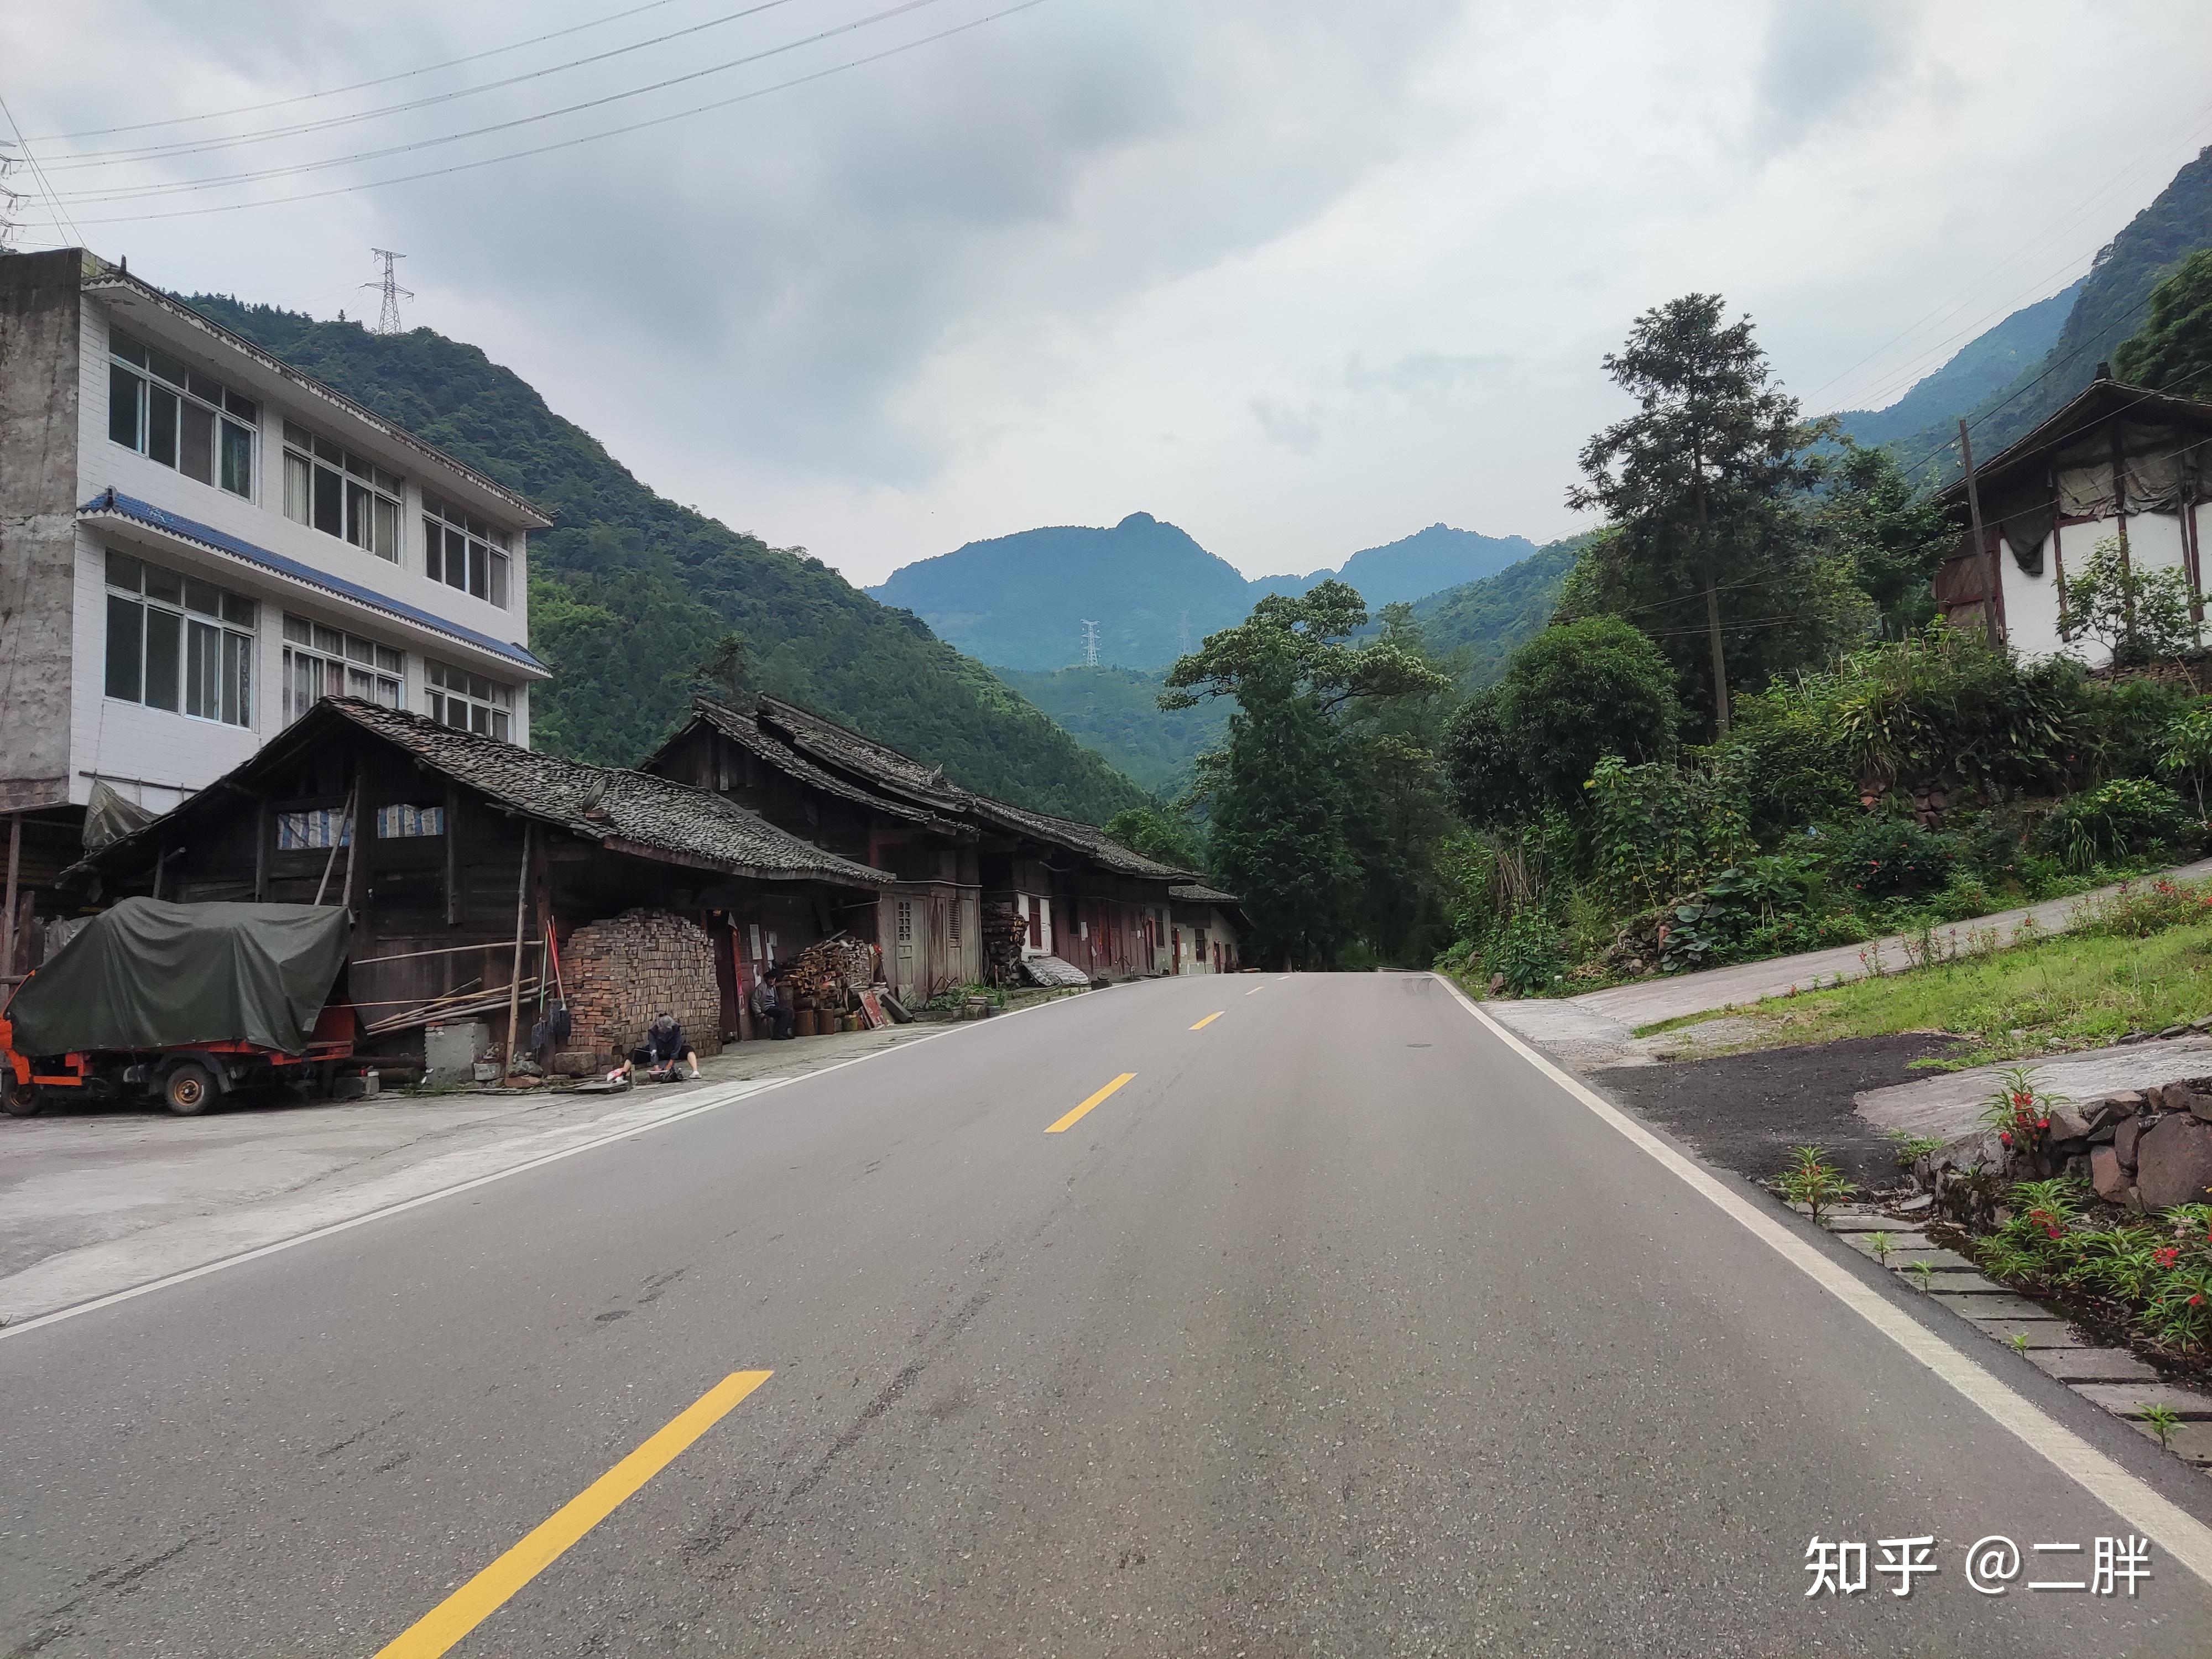 骑行318国道折多山下山路中 手机拍的 原图已丢失 - 中国国家地理最美观景拍摄点